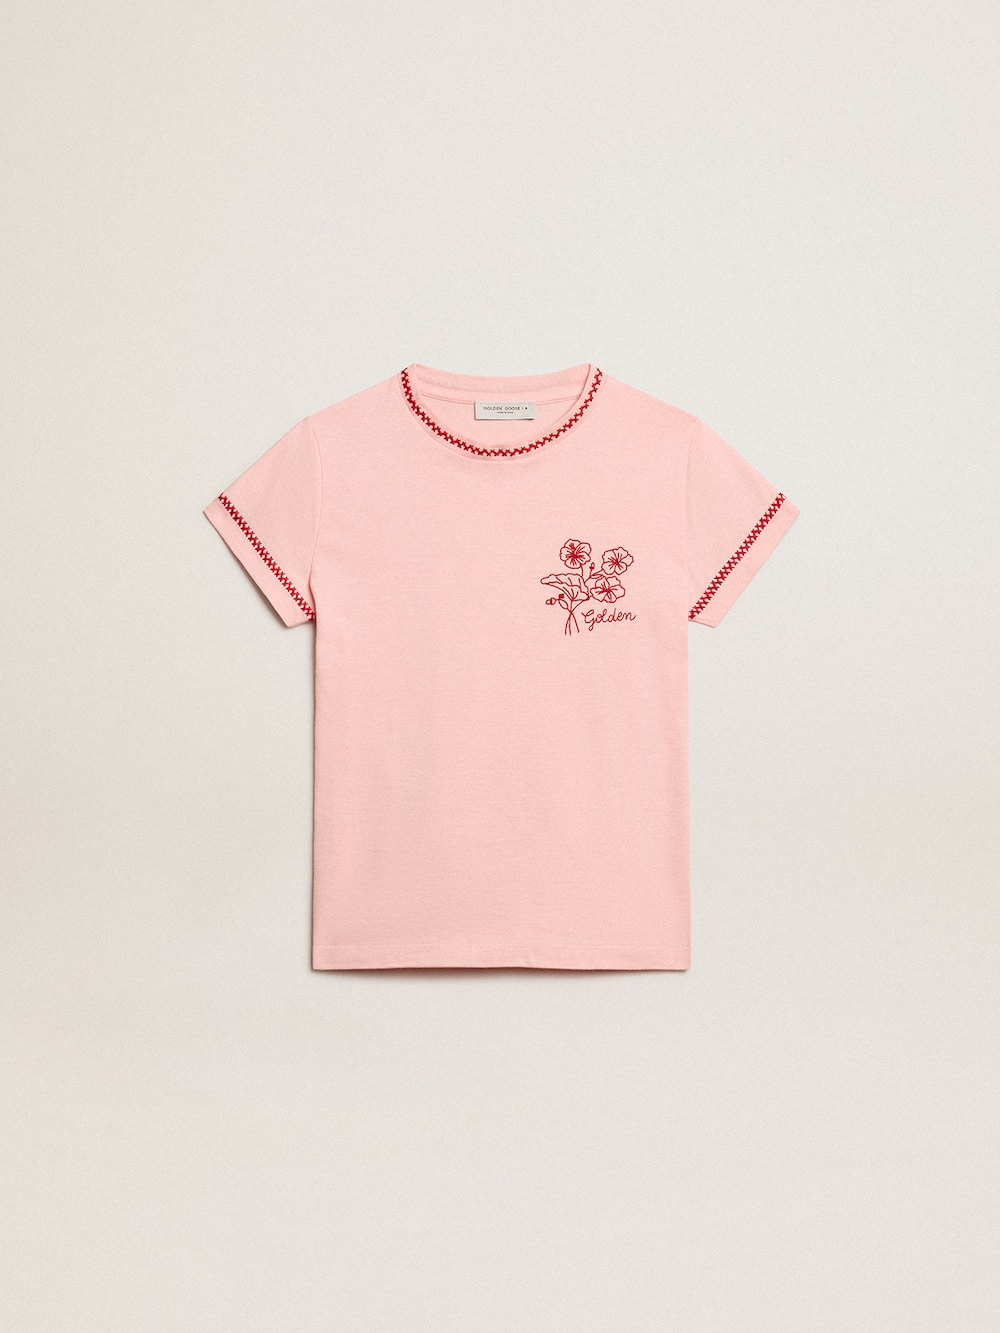 Golden Goose - T-shirt rose avec bords rouges et fleur brodée sur le cœur in 